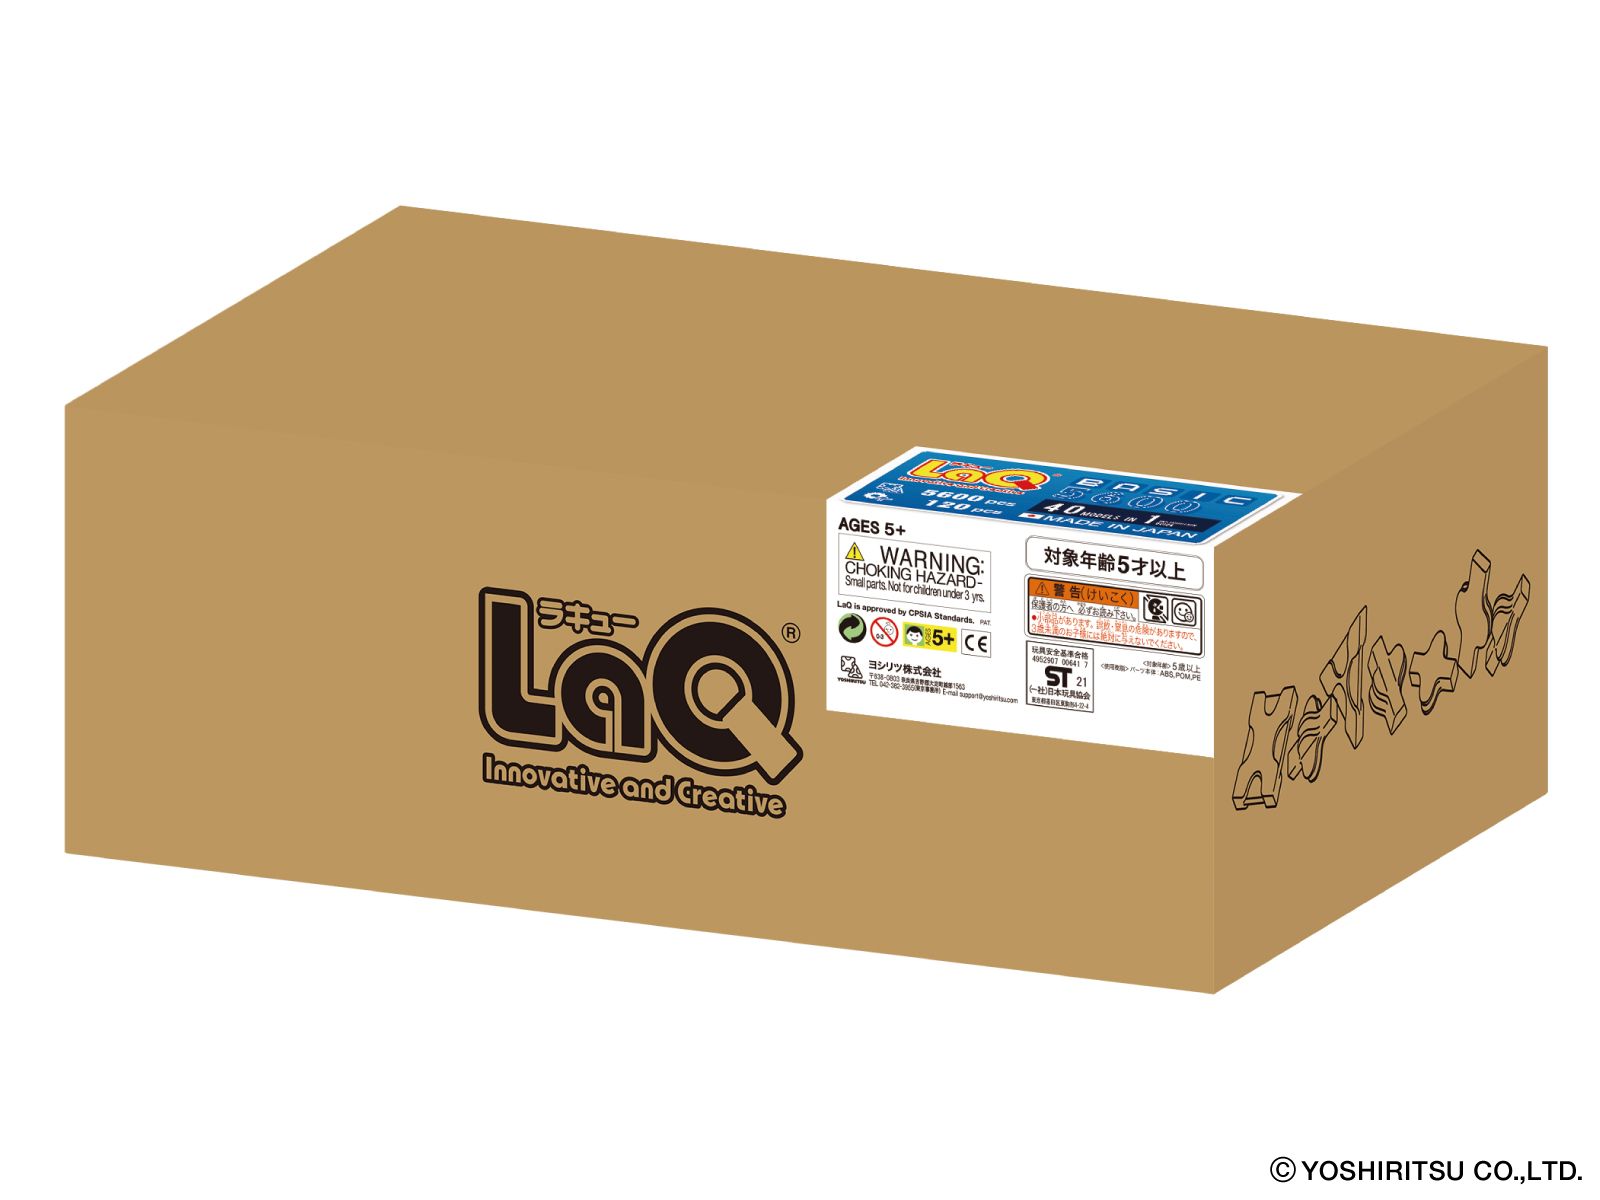  Bộ xếp hình sáng tạo LaQ BASIC 5600 - Chủ đề Hình ghép Cơ bản 5600 mảnh ghép và 120 chi tiết Hamacron 